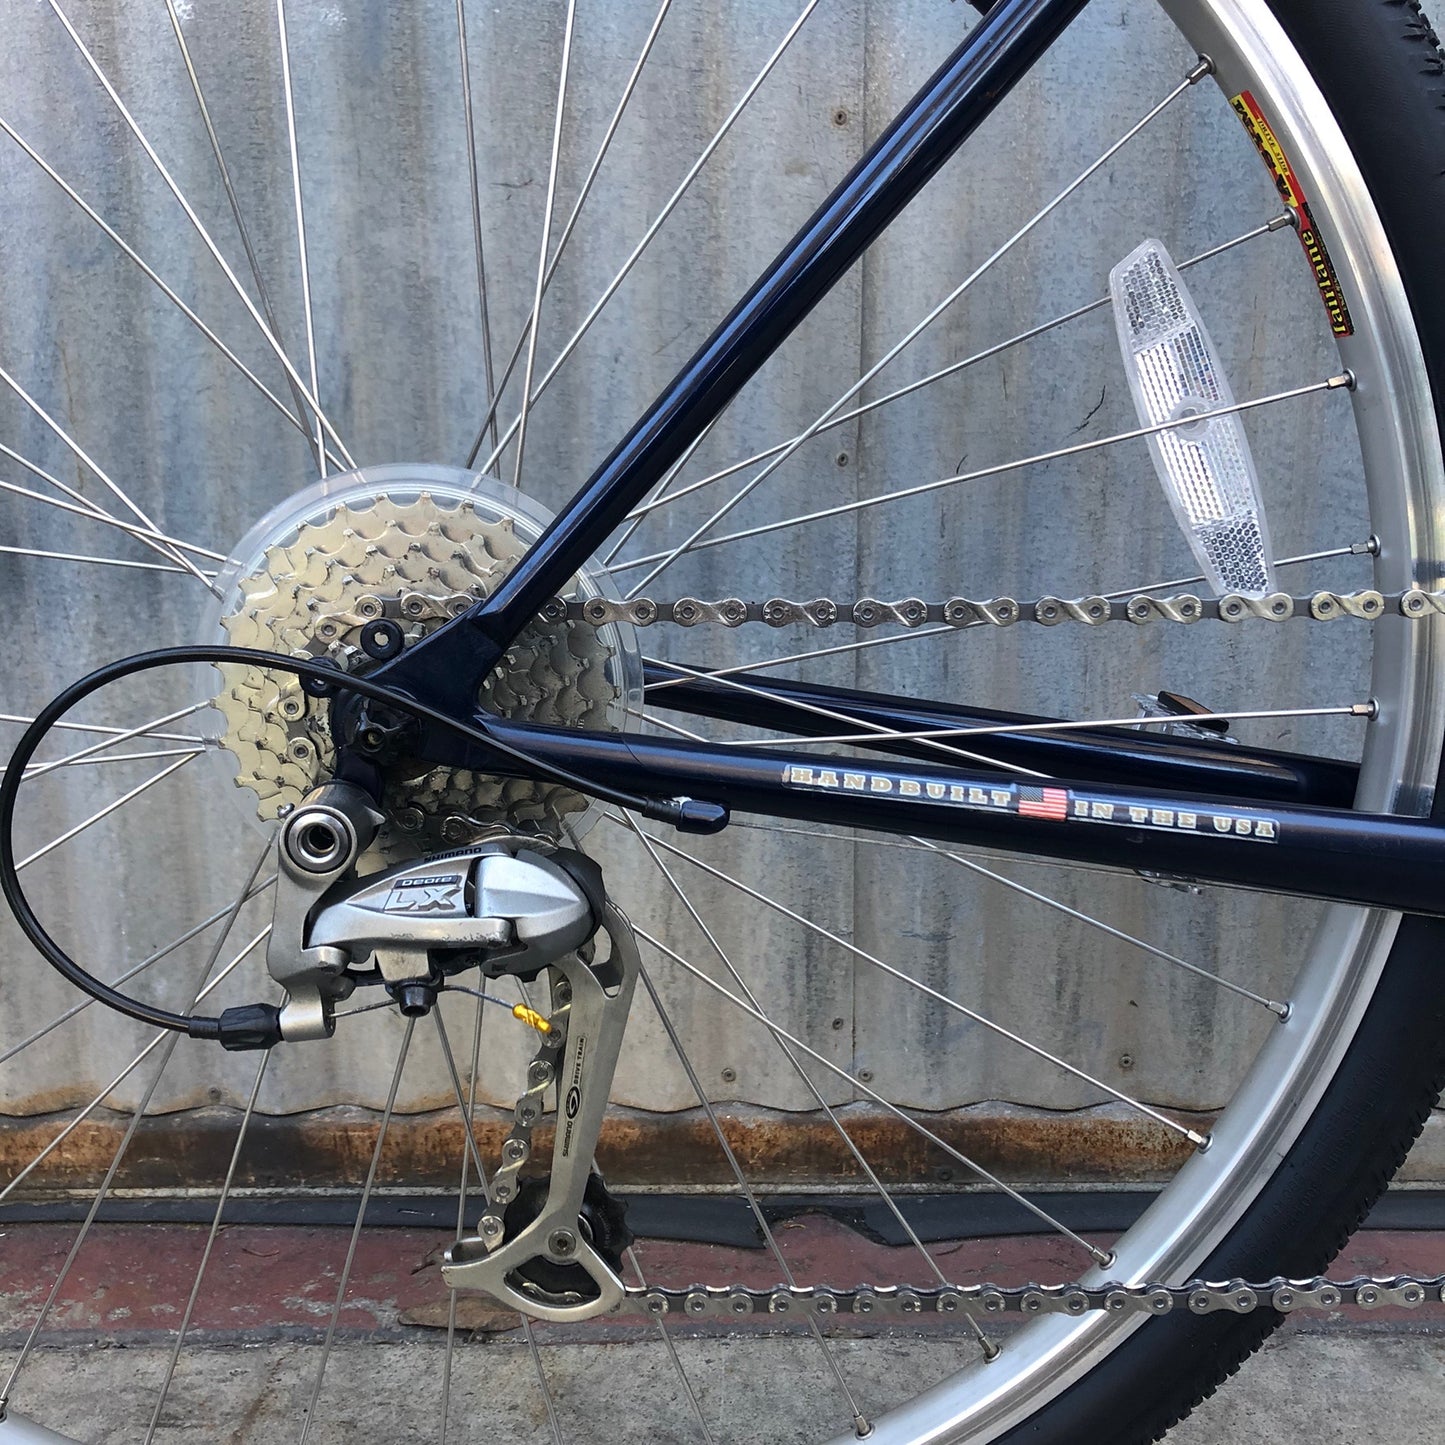 Trek 520 Touring Bicycle - Made in USA?